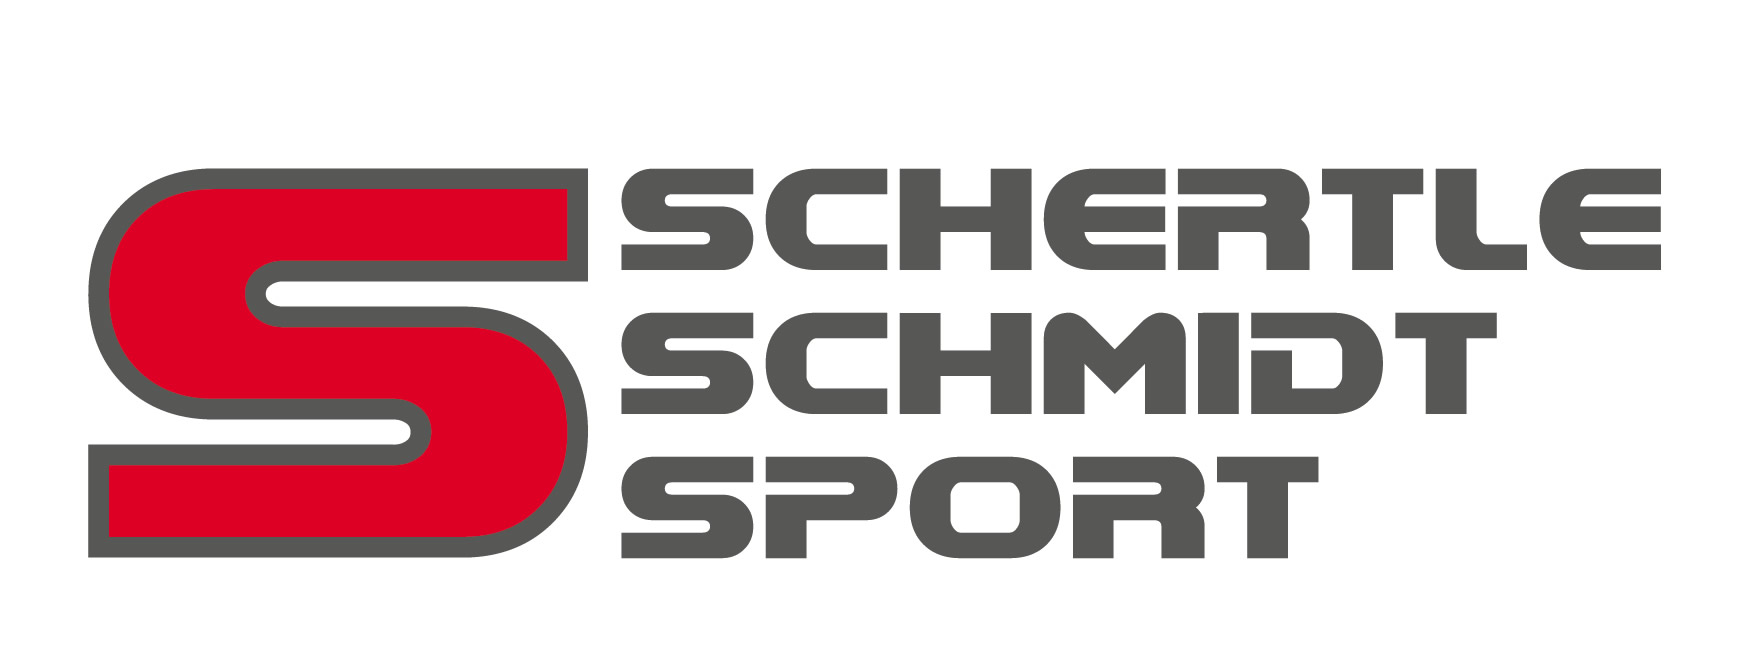 Schertle Schmidt logo gross